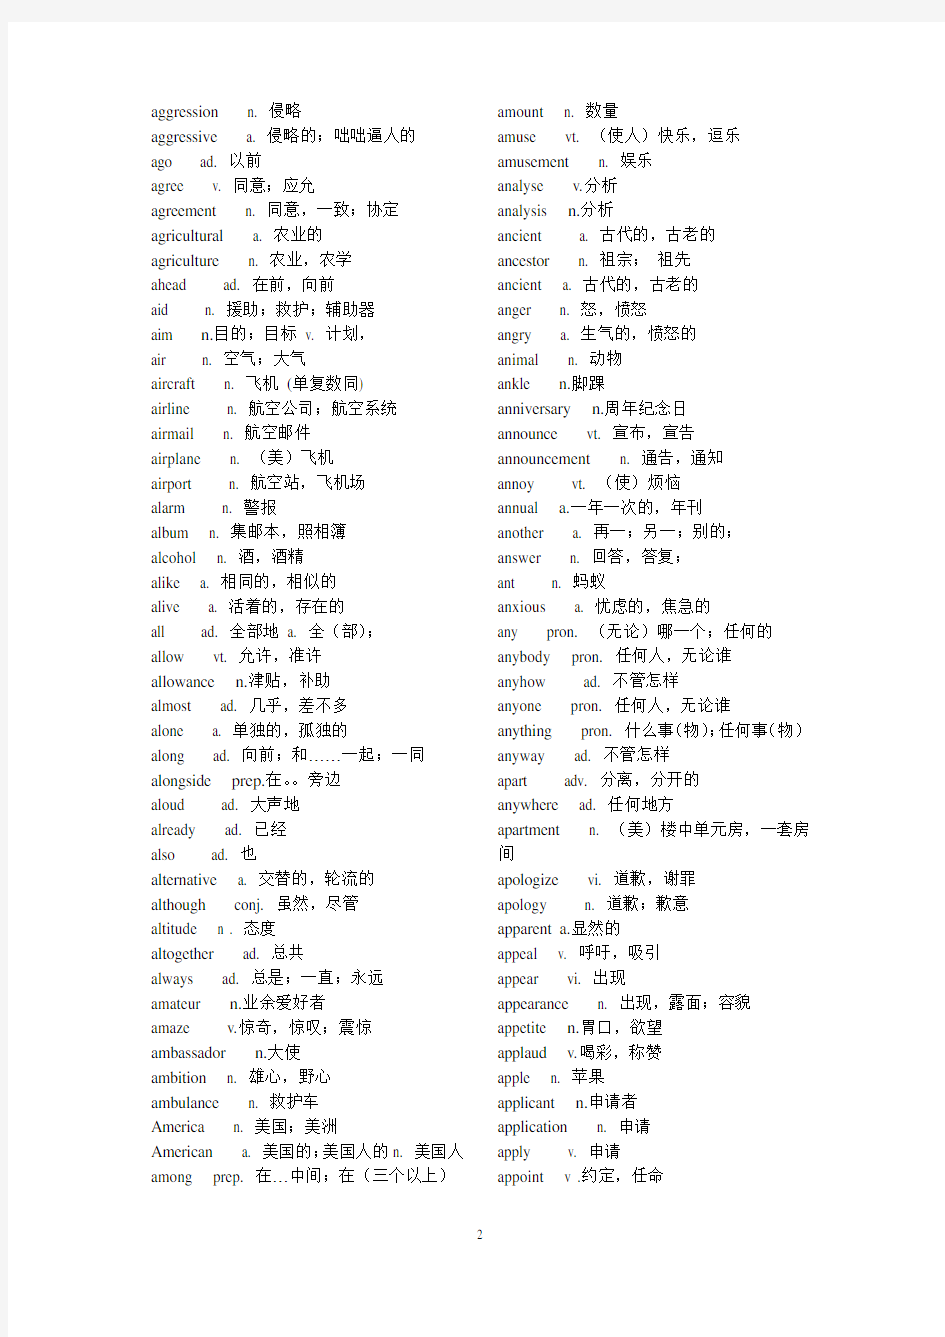 高考英语考纲3500个词汇表